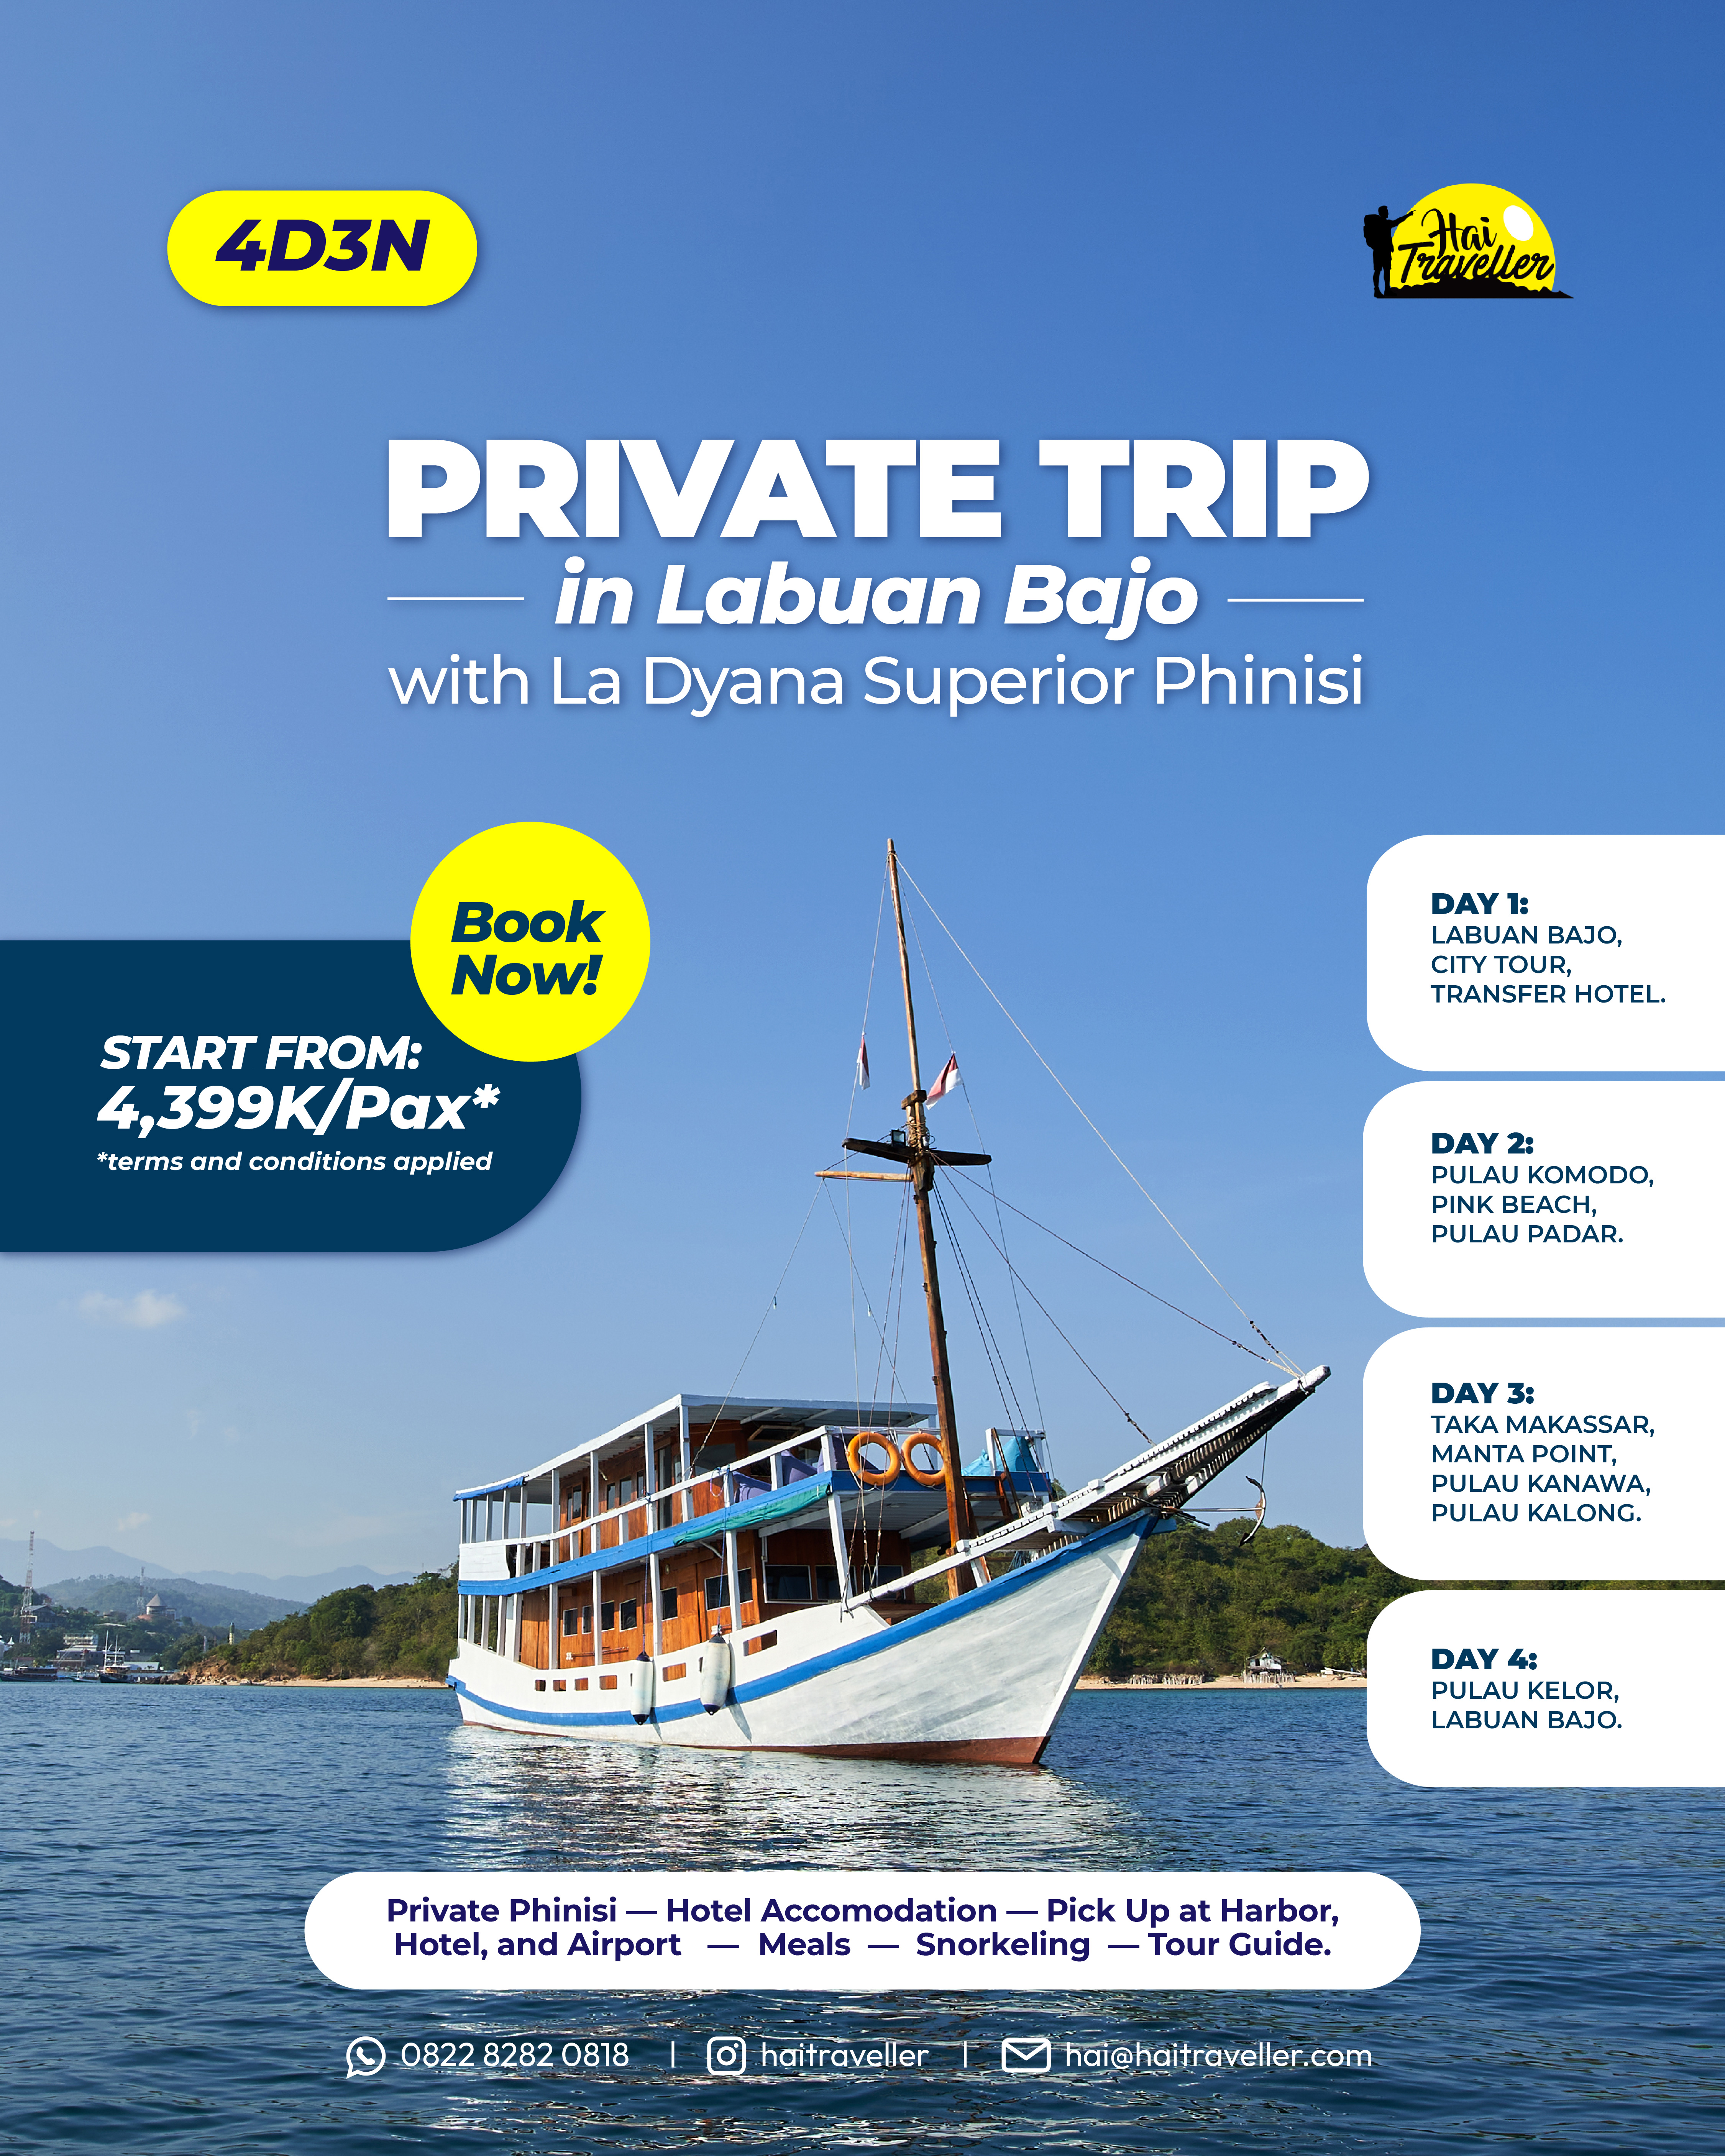 4D3N Private Trip Labuan Bajo by LA DYANA Superior Phinisi